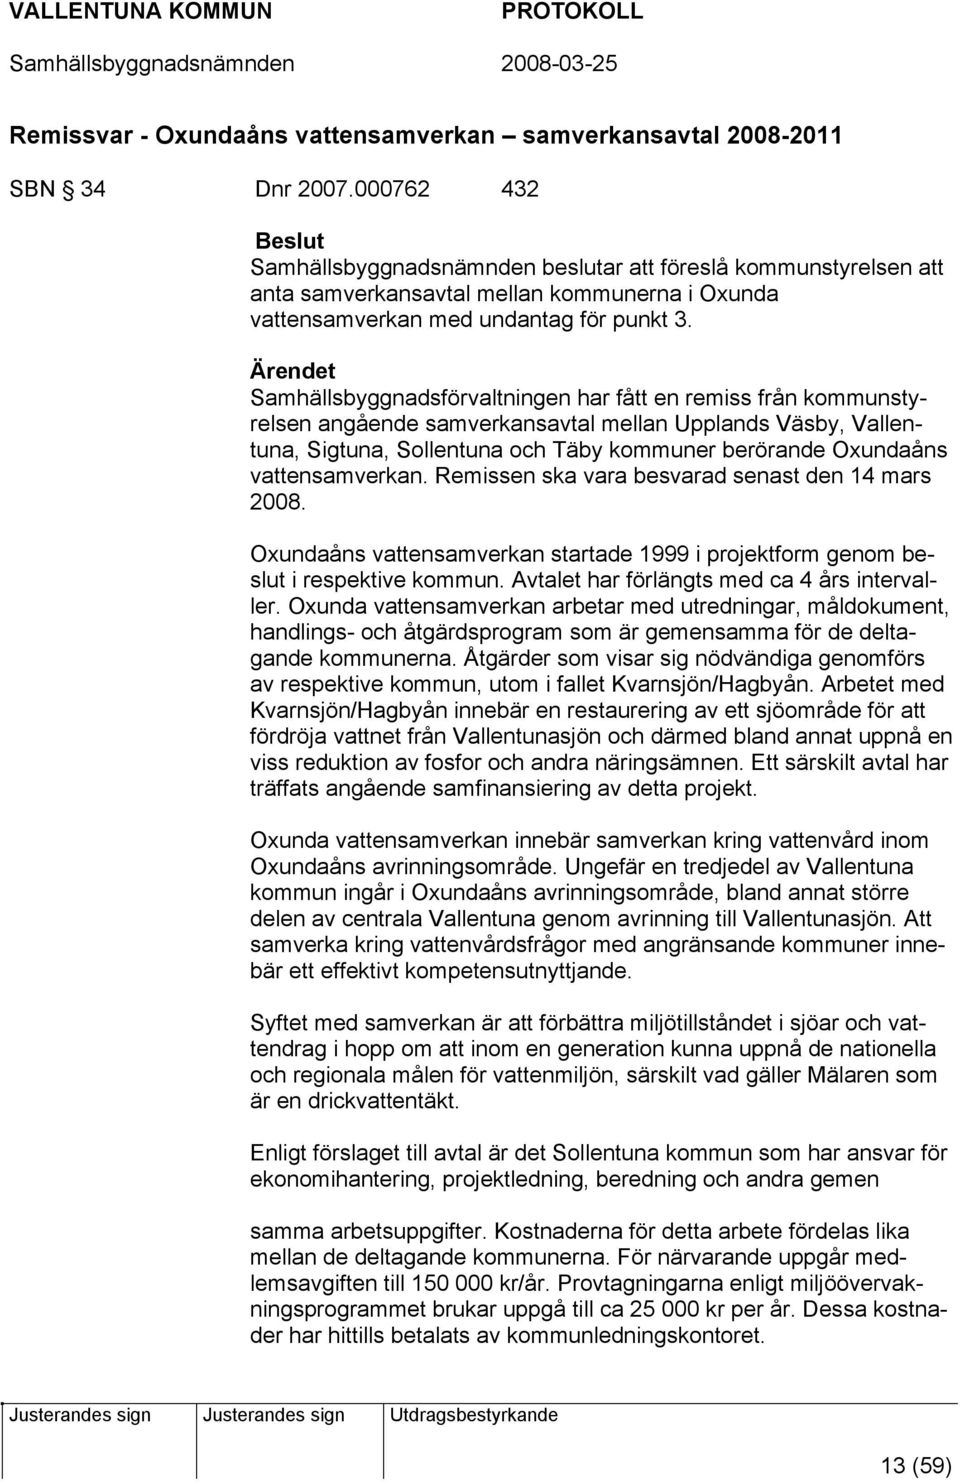 Samhällsbyggnadsförvaltningen har fått en remiss från kommunstyrelsen angående samverkansavtal mellan Upplands Väsby, Vallentuna, Sigtuna, Sollentuna och Täby kommuner berörande Oxundaåns